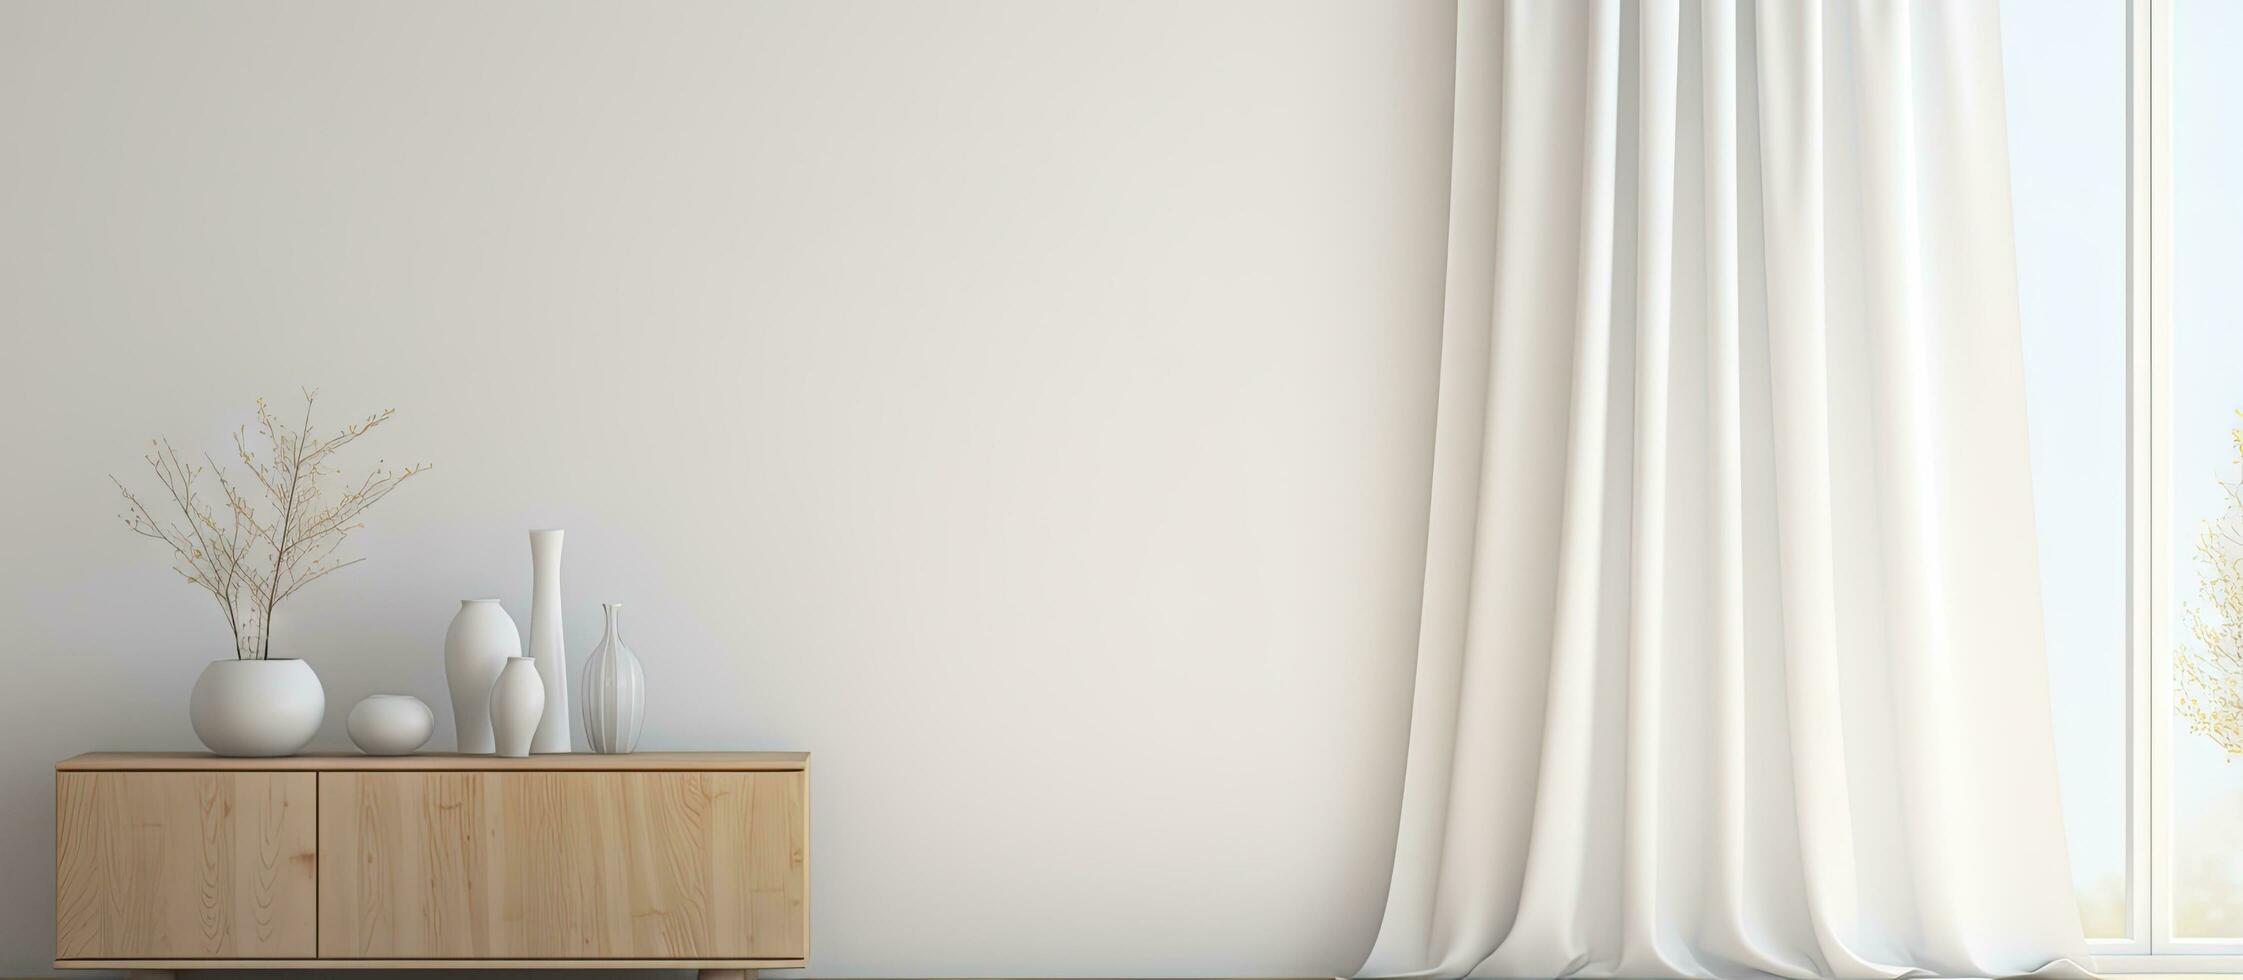 minimalista branco quarto com cômoda de madeira chão decoração em parede janela com cortinas e nórdico interior foto